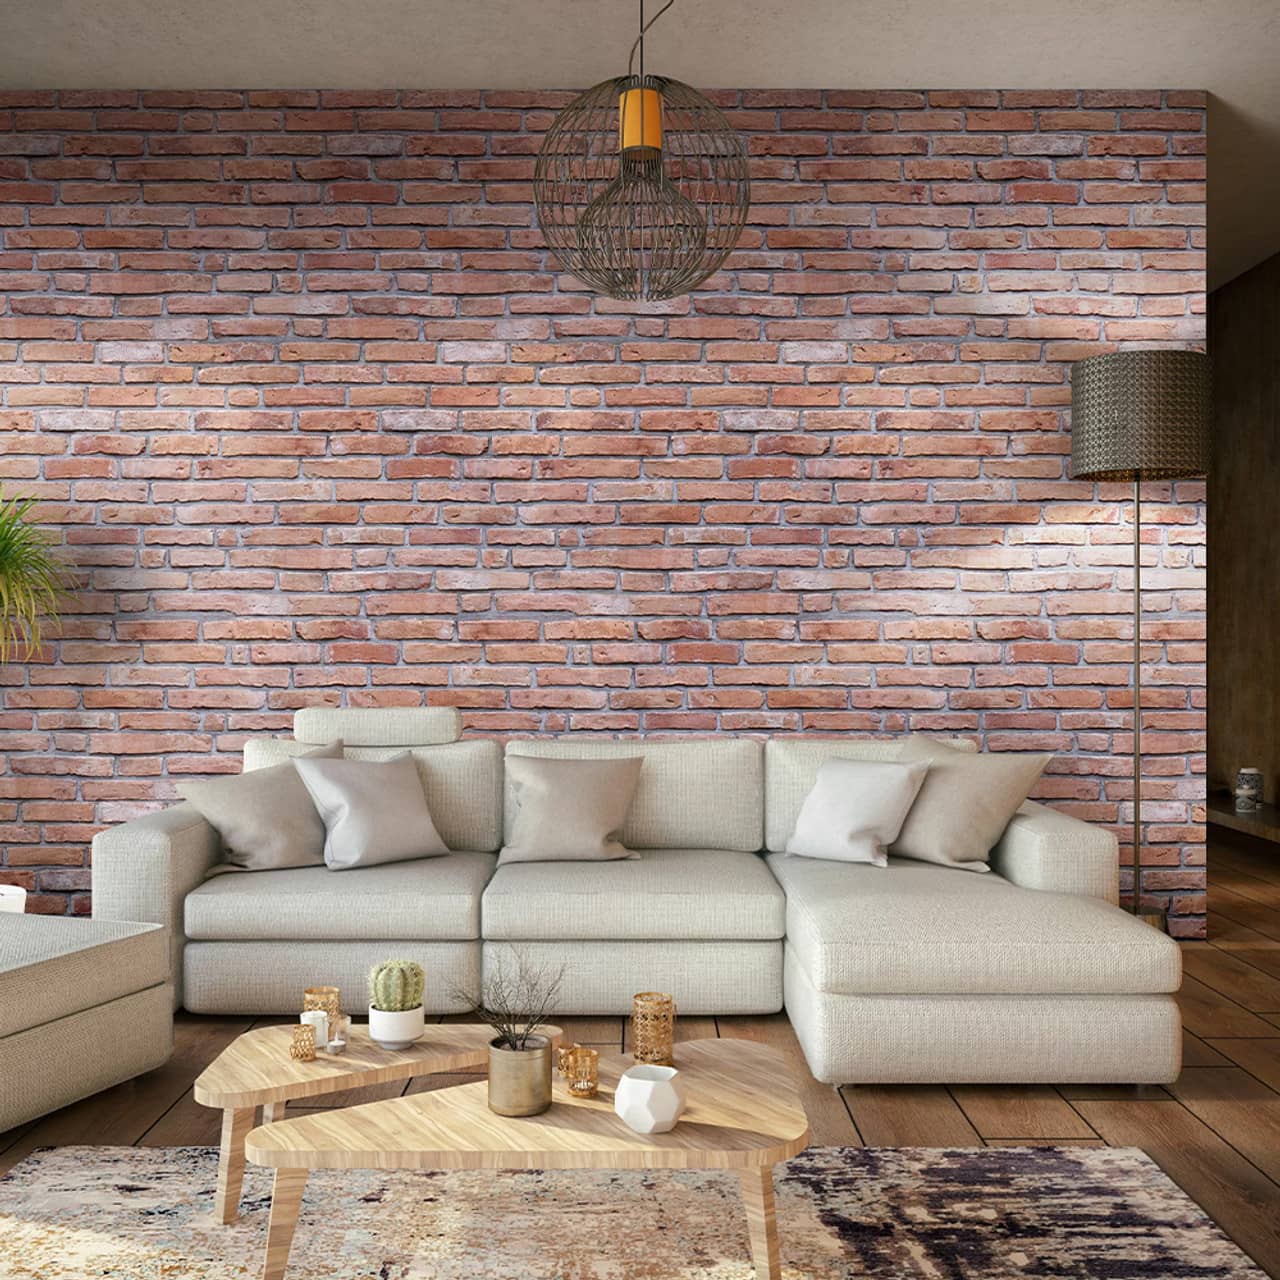 3D textured brick wall panel behind a sofa